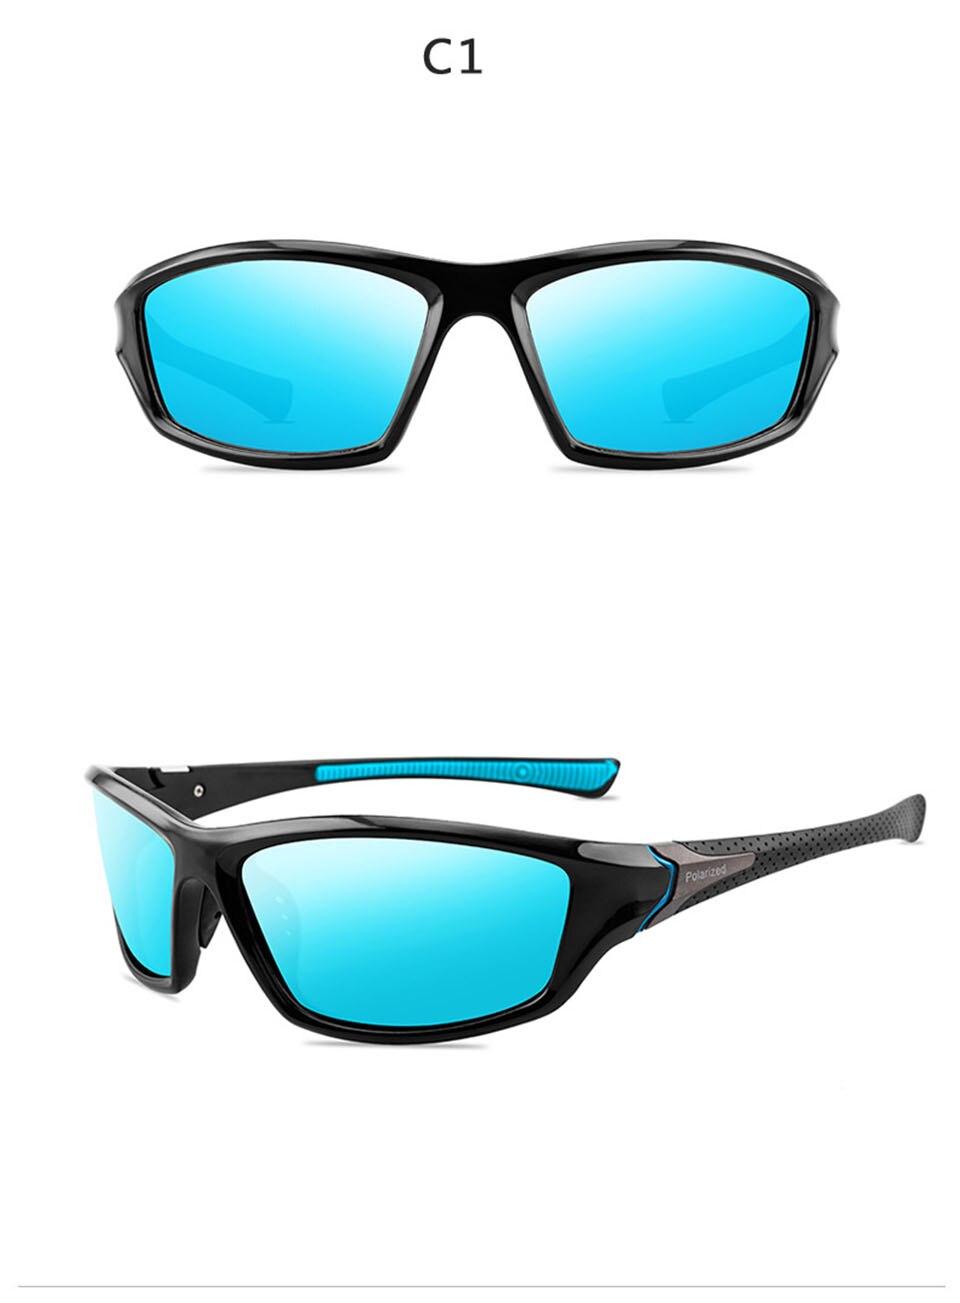 Luksusowe spolaryzowane okulary przeciwsłoneczne One Piece Fishing klasyczne okulary przeciwsłoneczne męskie okulary przeciwsłoneczne do jazdy męskie okulary przeciwsłoneczne Vintage Travel sunglass